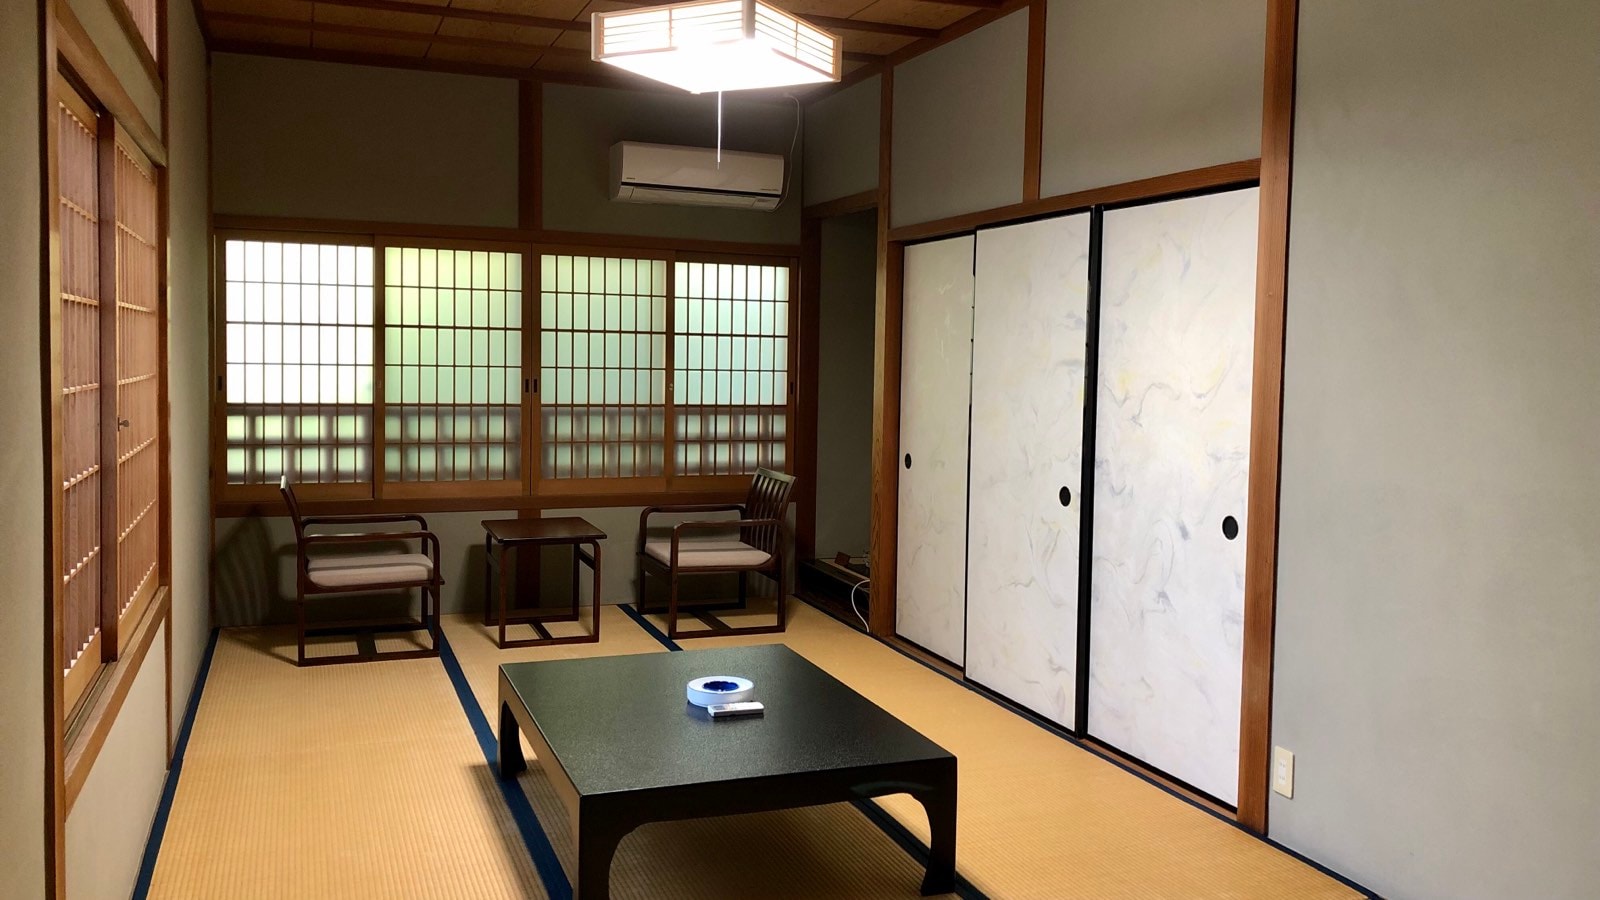 基本日式房间（15张榻榻米〜）*没有厕所